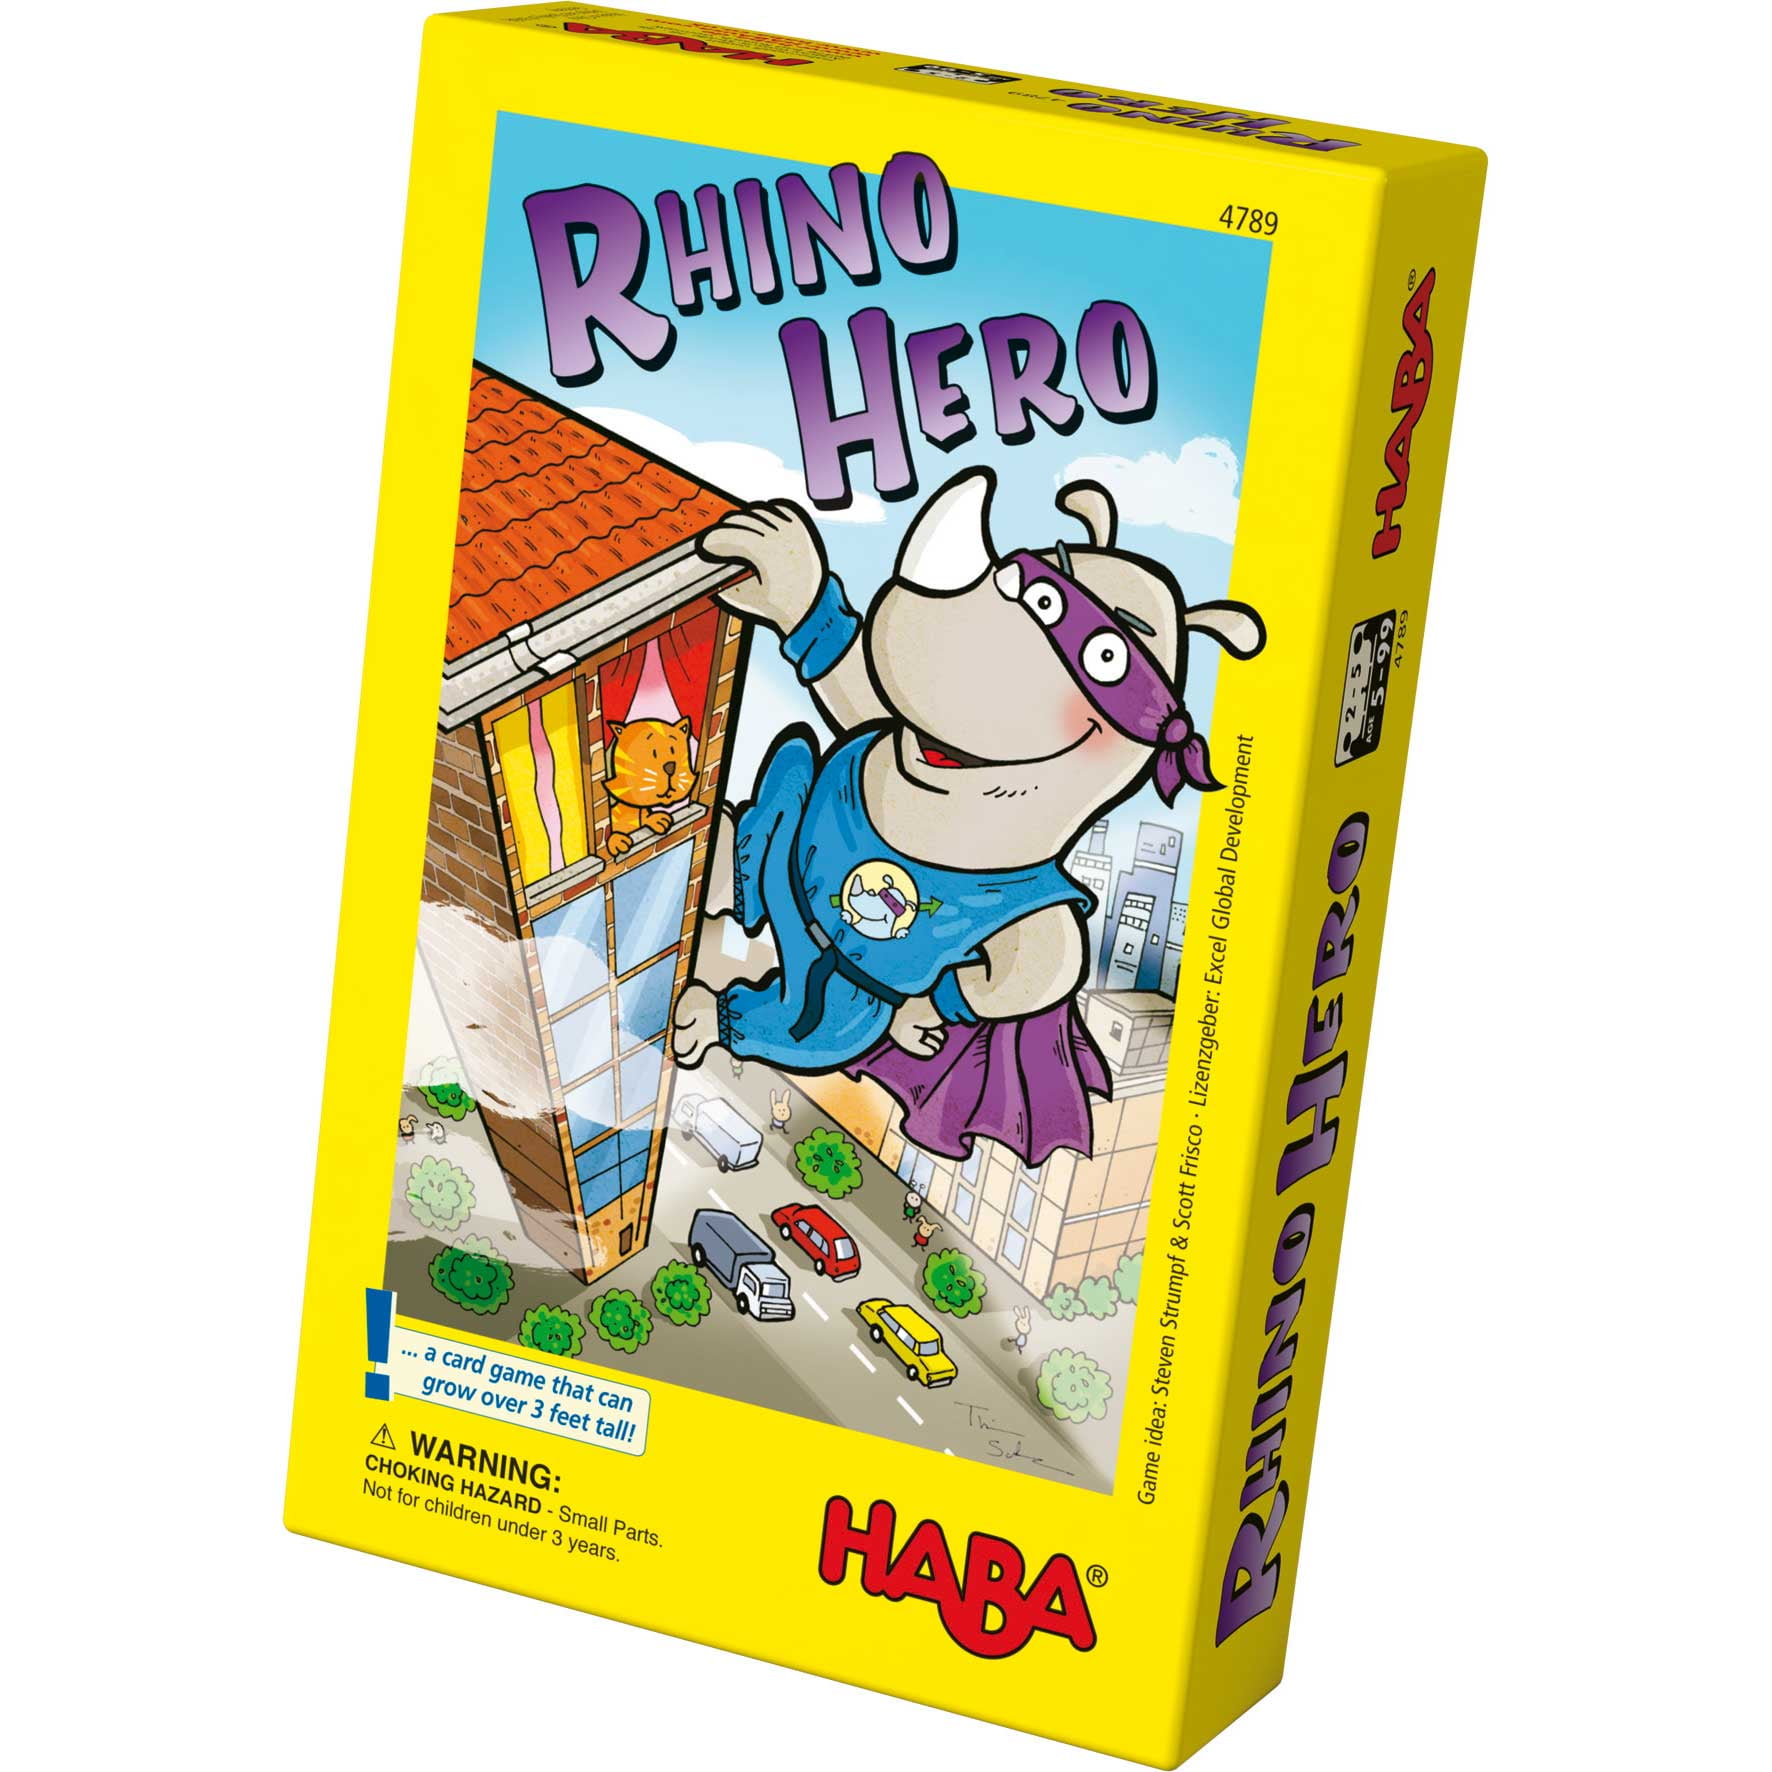 Rhino hero juego habilidad :: Haba :: Juguetes :: Dideco